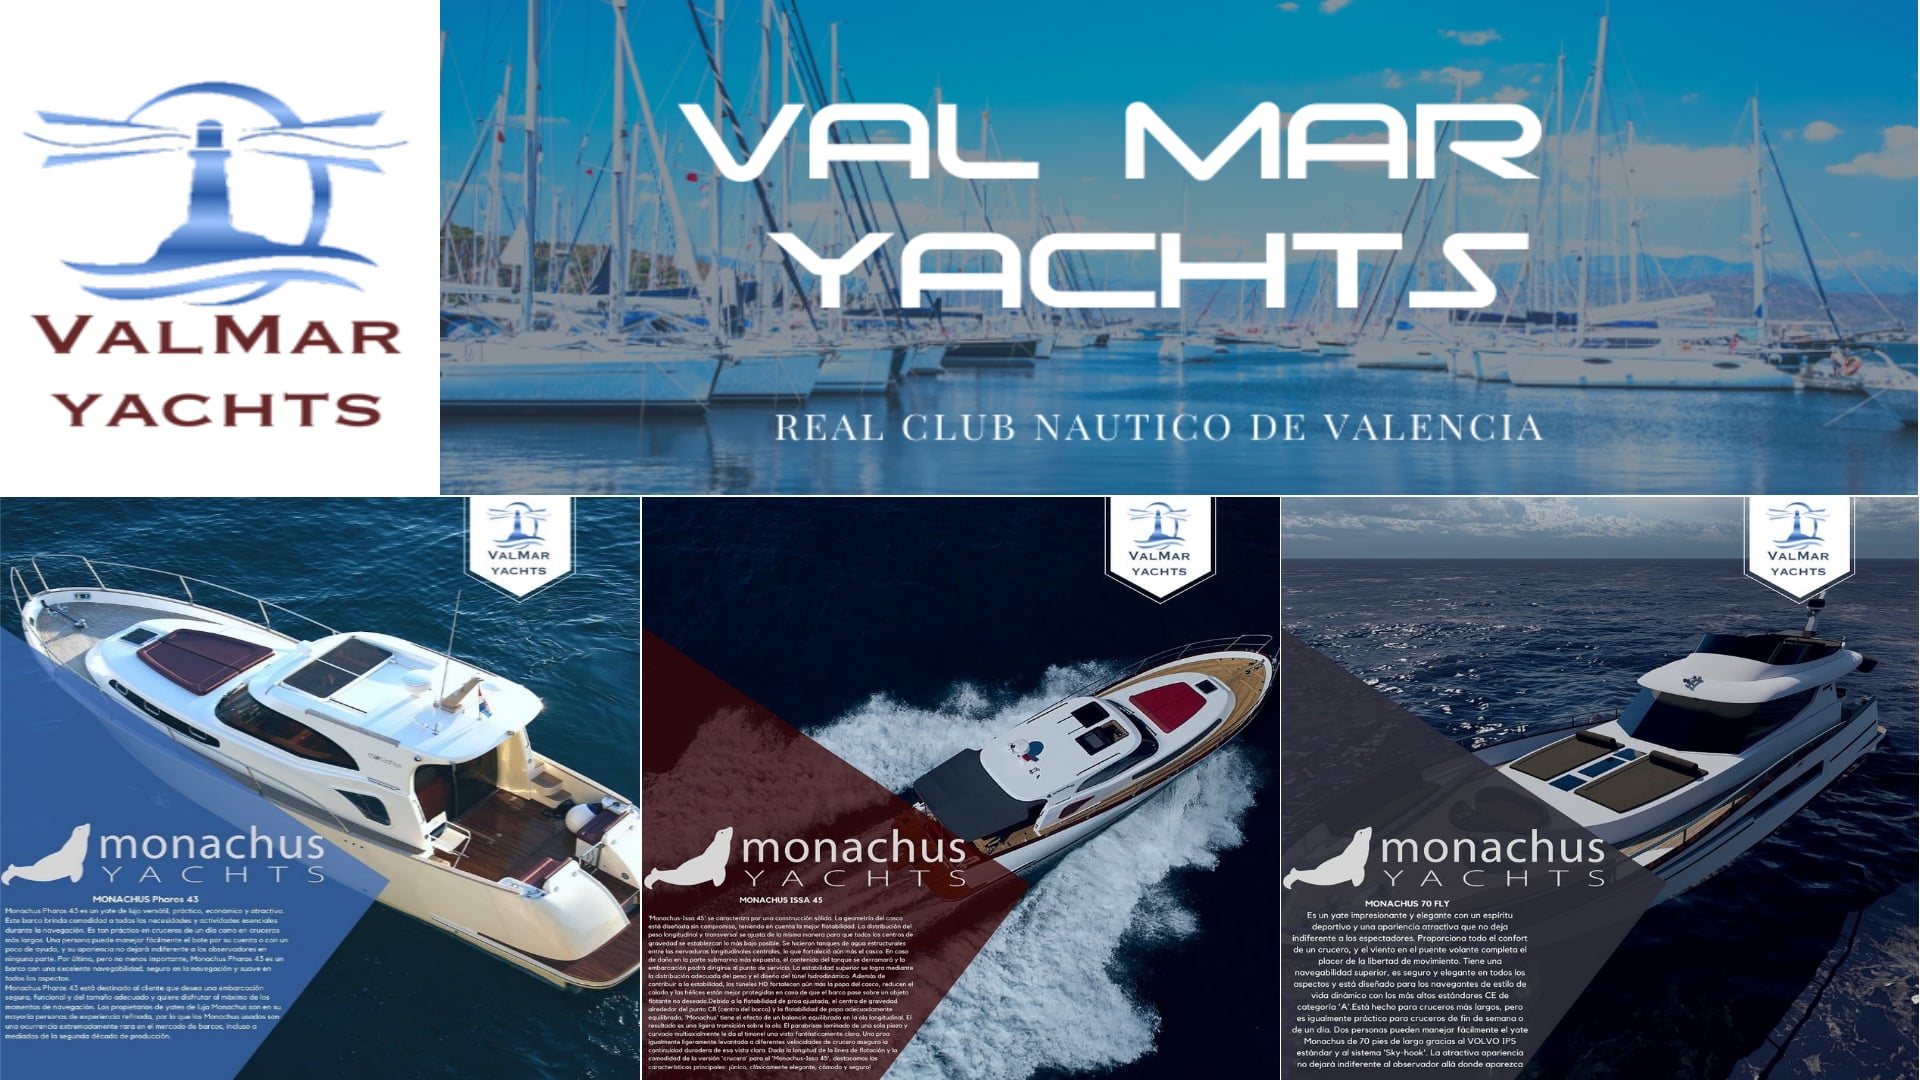 Nuevo representante autorizado de los barcos Monachus Yachts para España